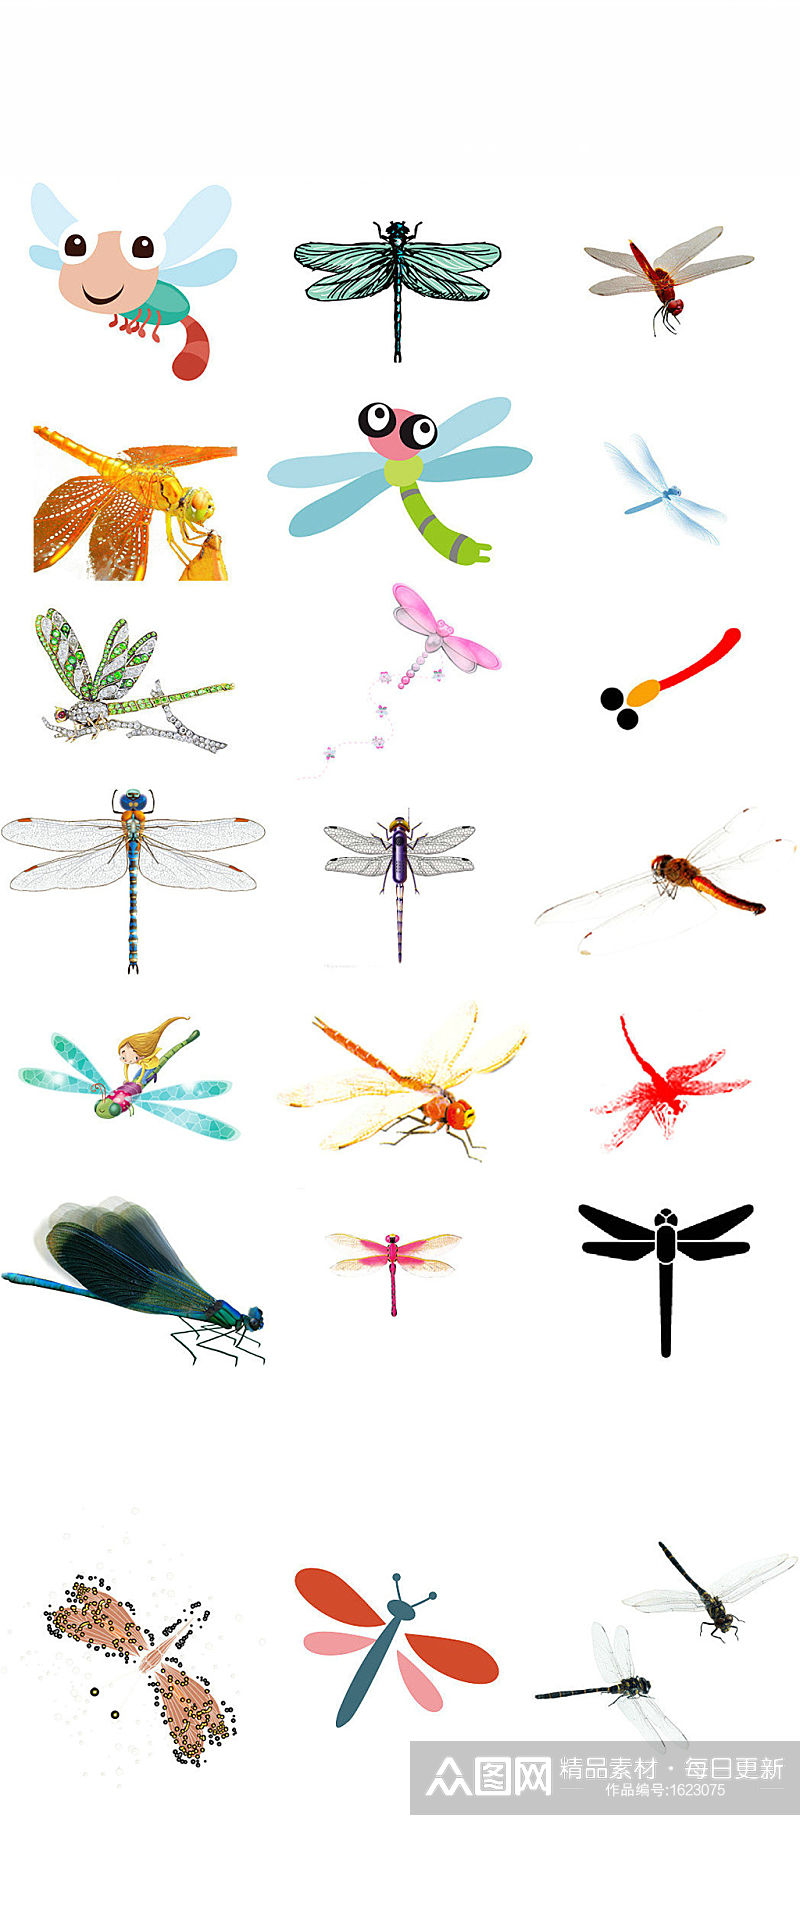 可爱的蜻蜓卡通动物画素材素材